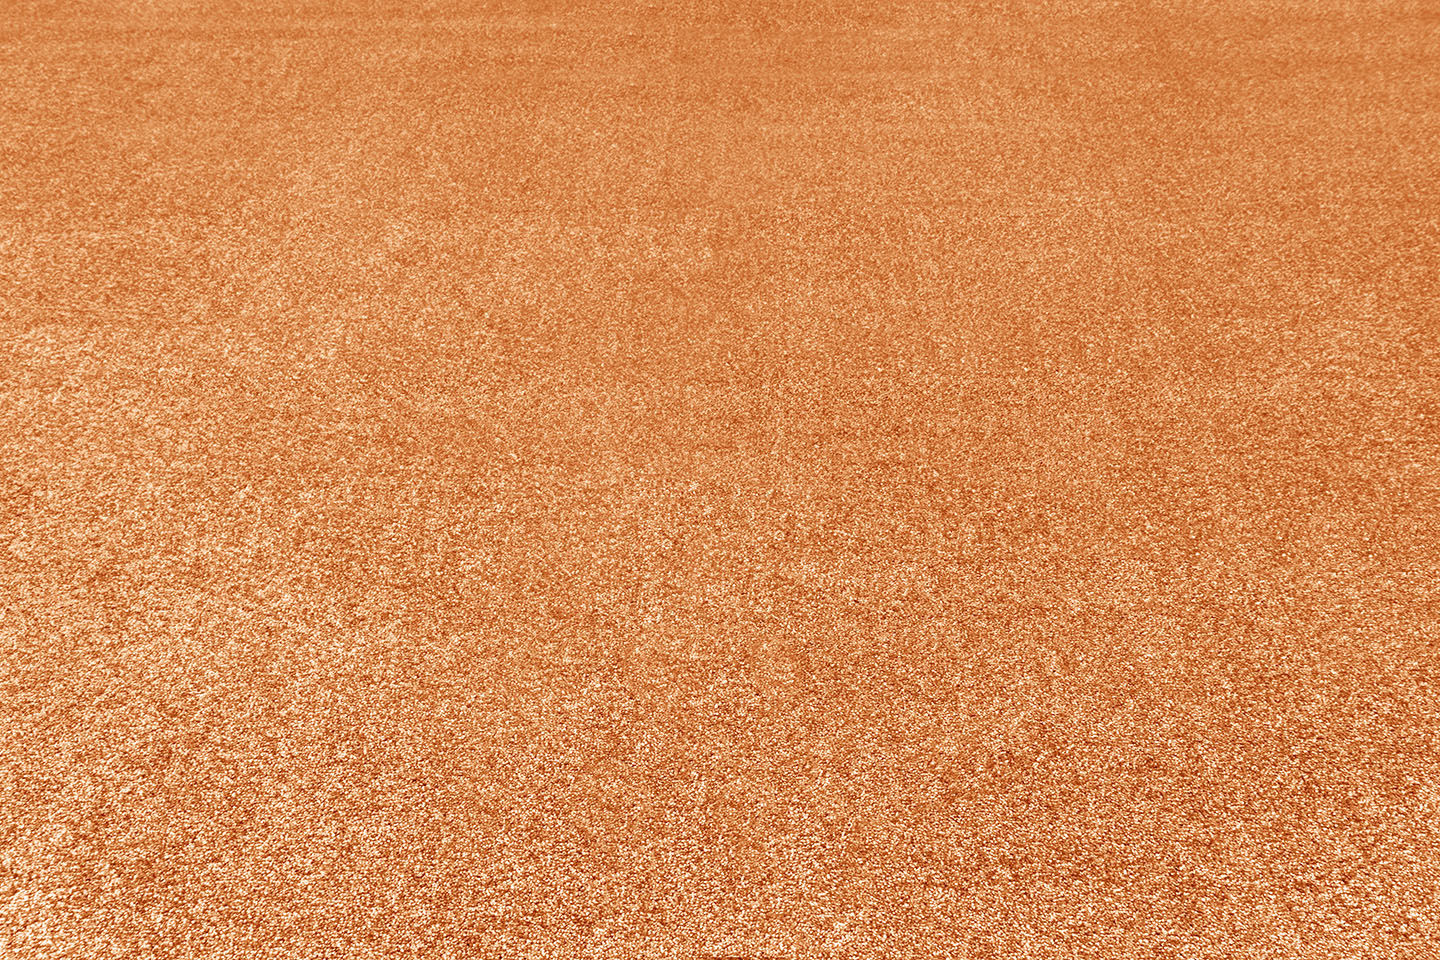 Metrážny koberec OMNIA pomaranč